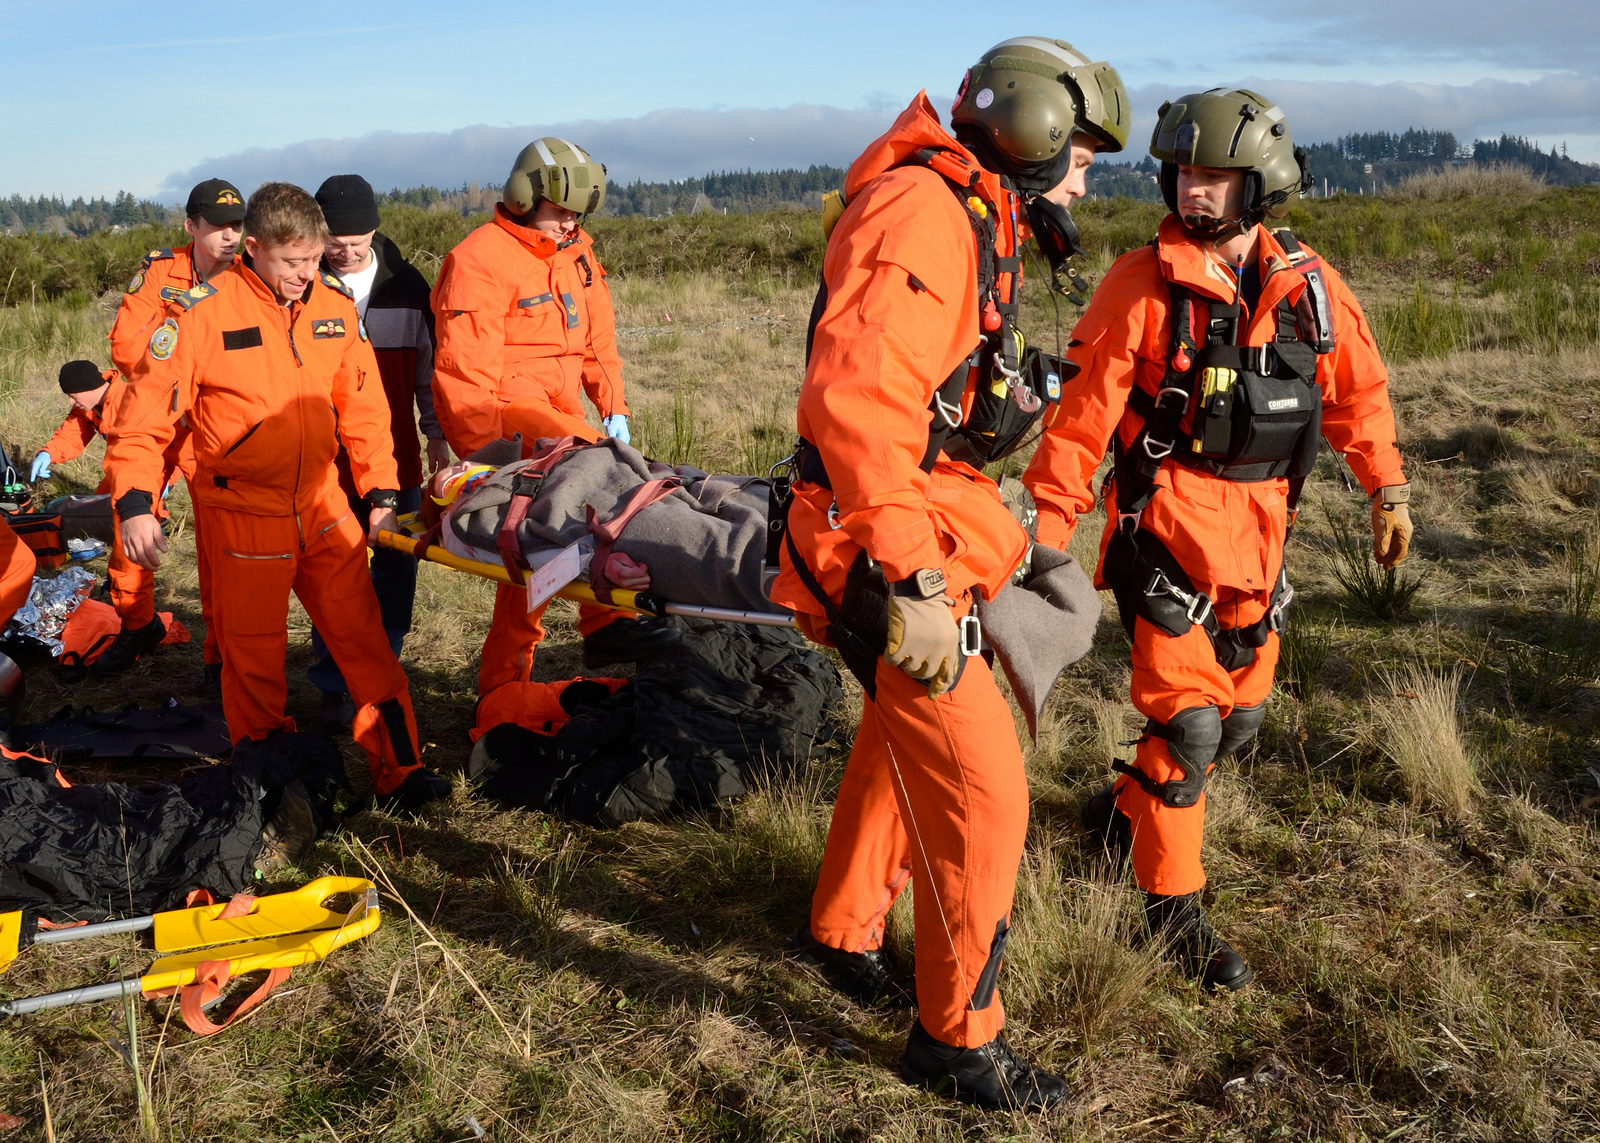 Comox, British Columbia, 22 November 2013 - Search and Rescue Technicians p...